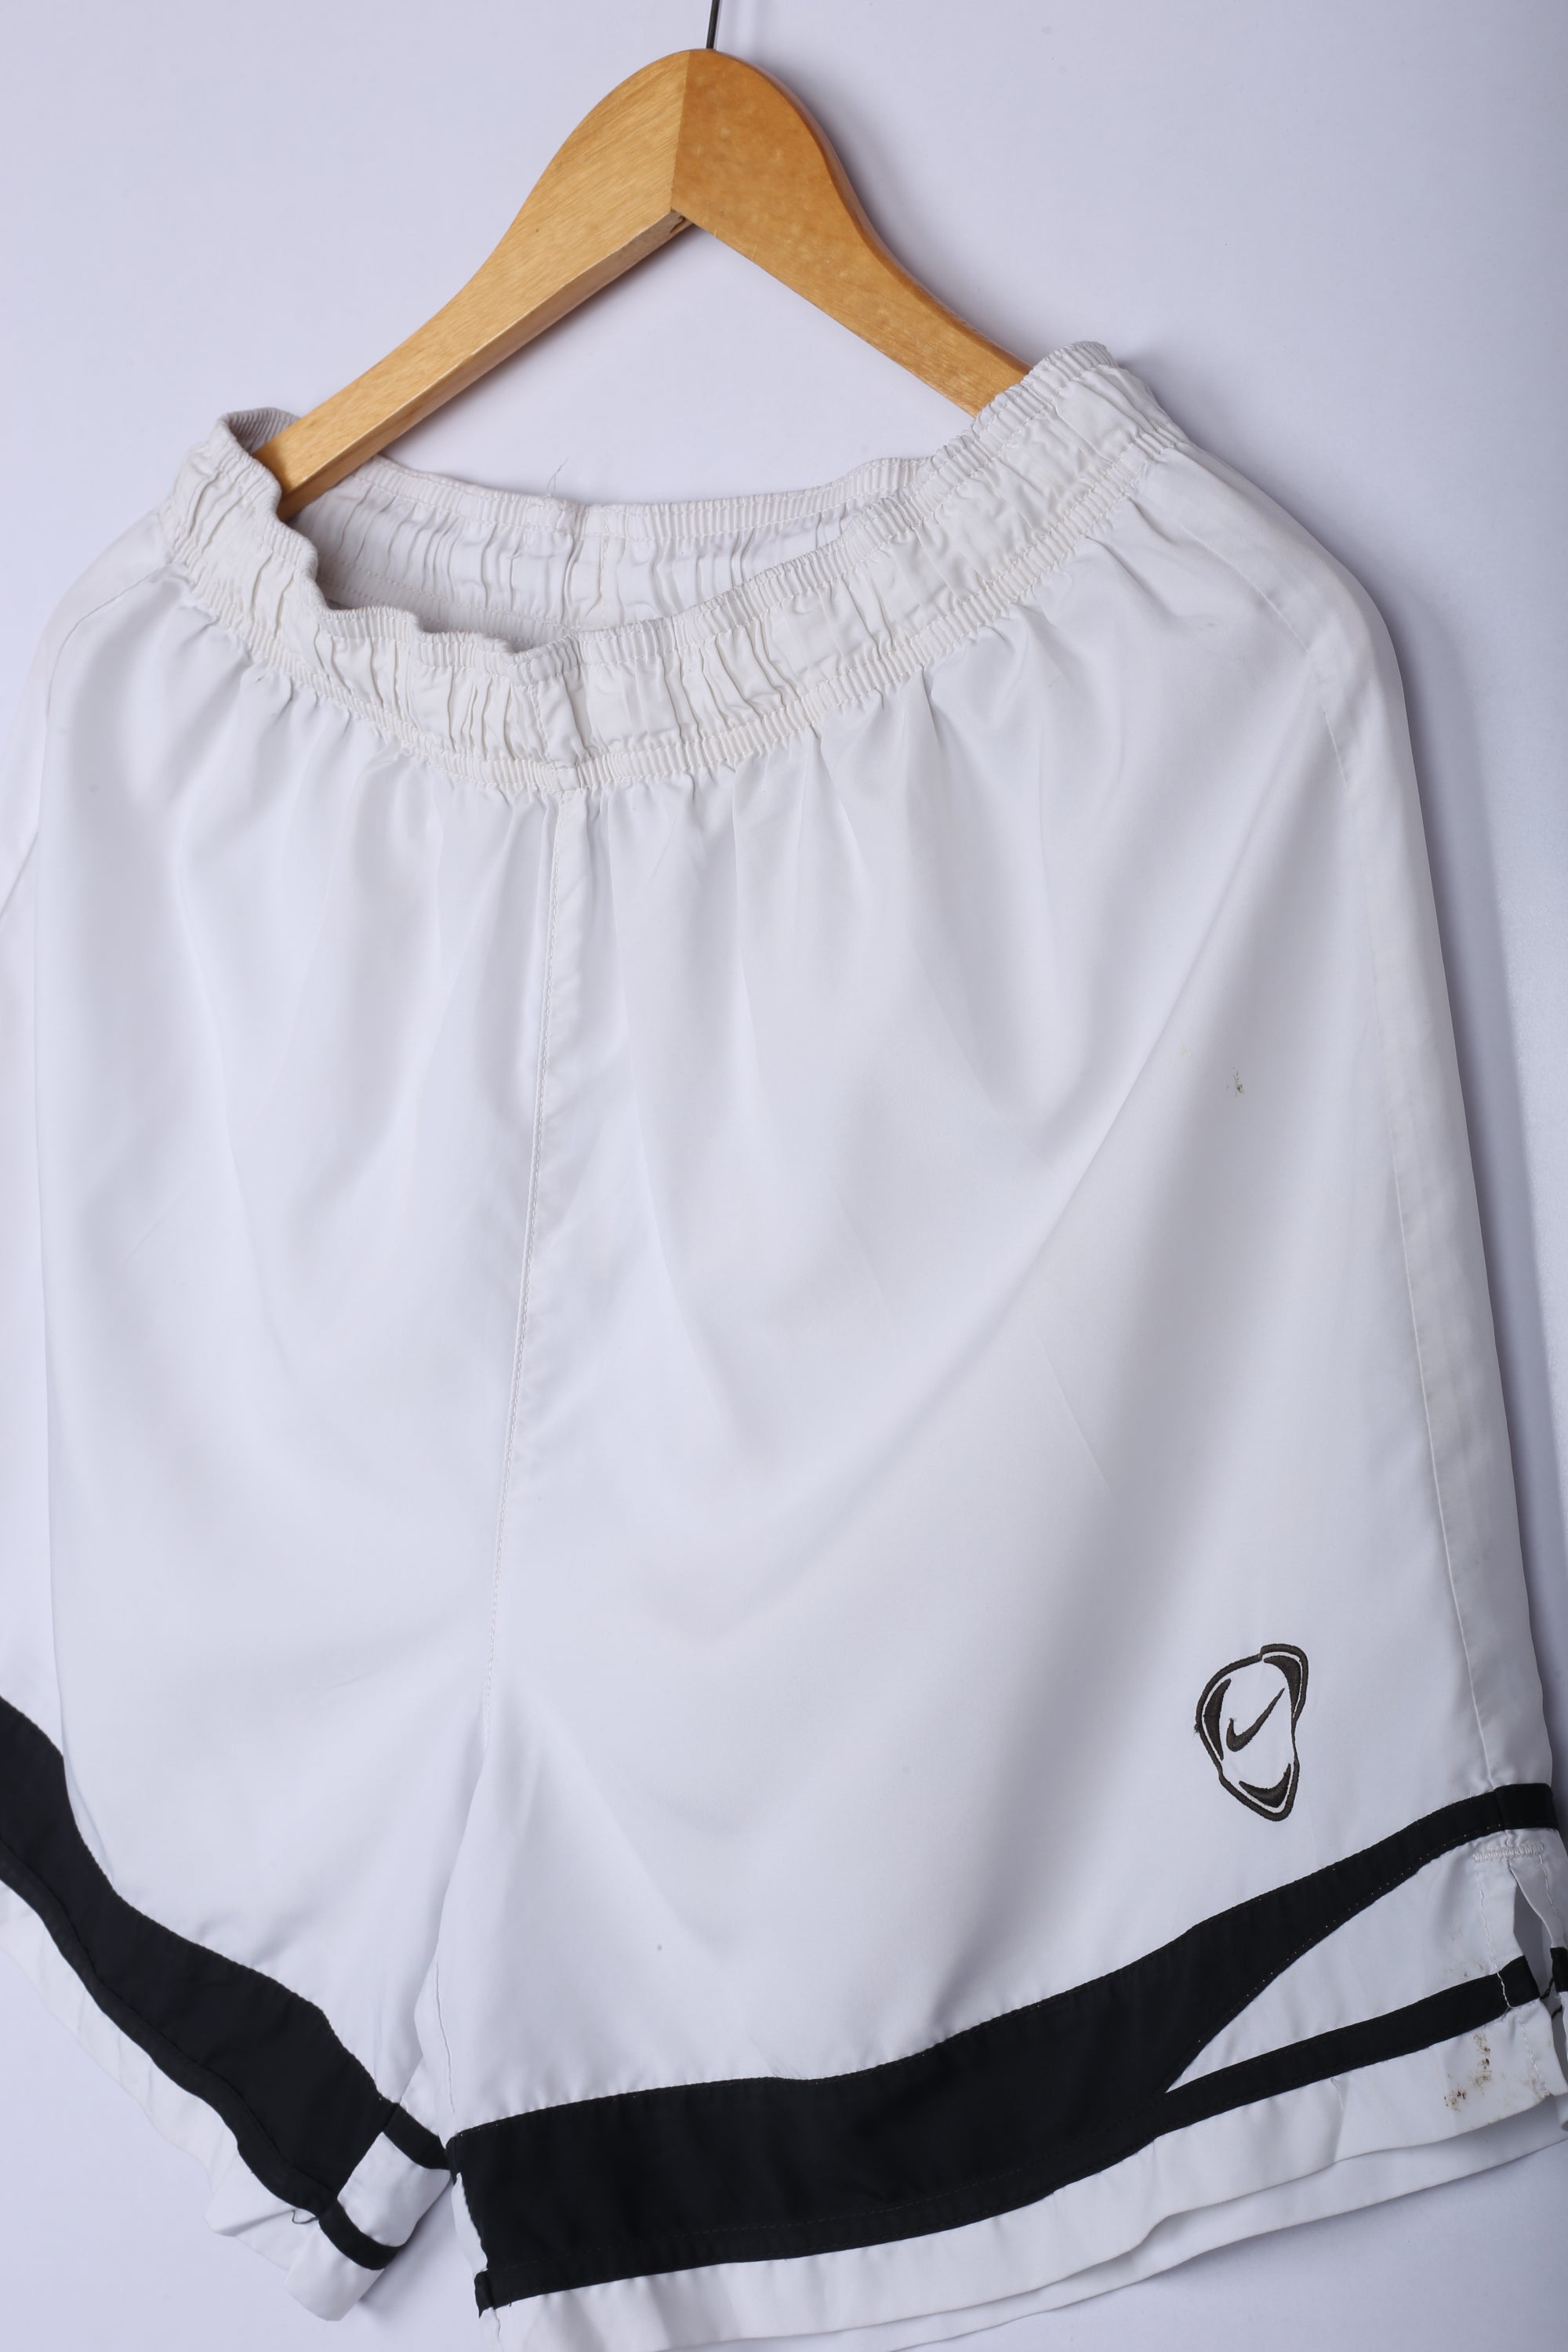 Vintage Nike ACG Shorts White